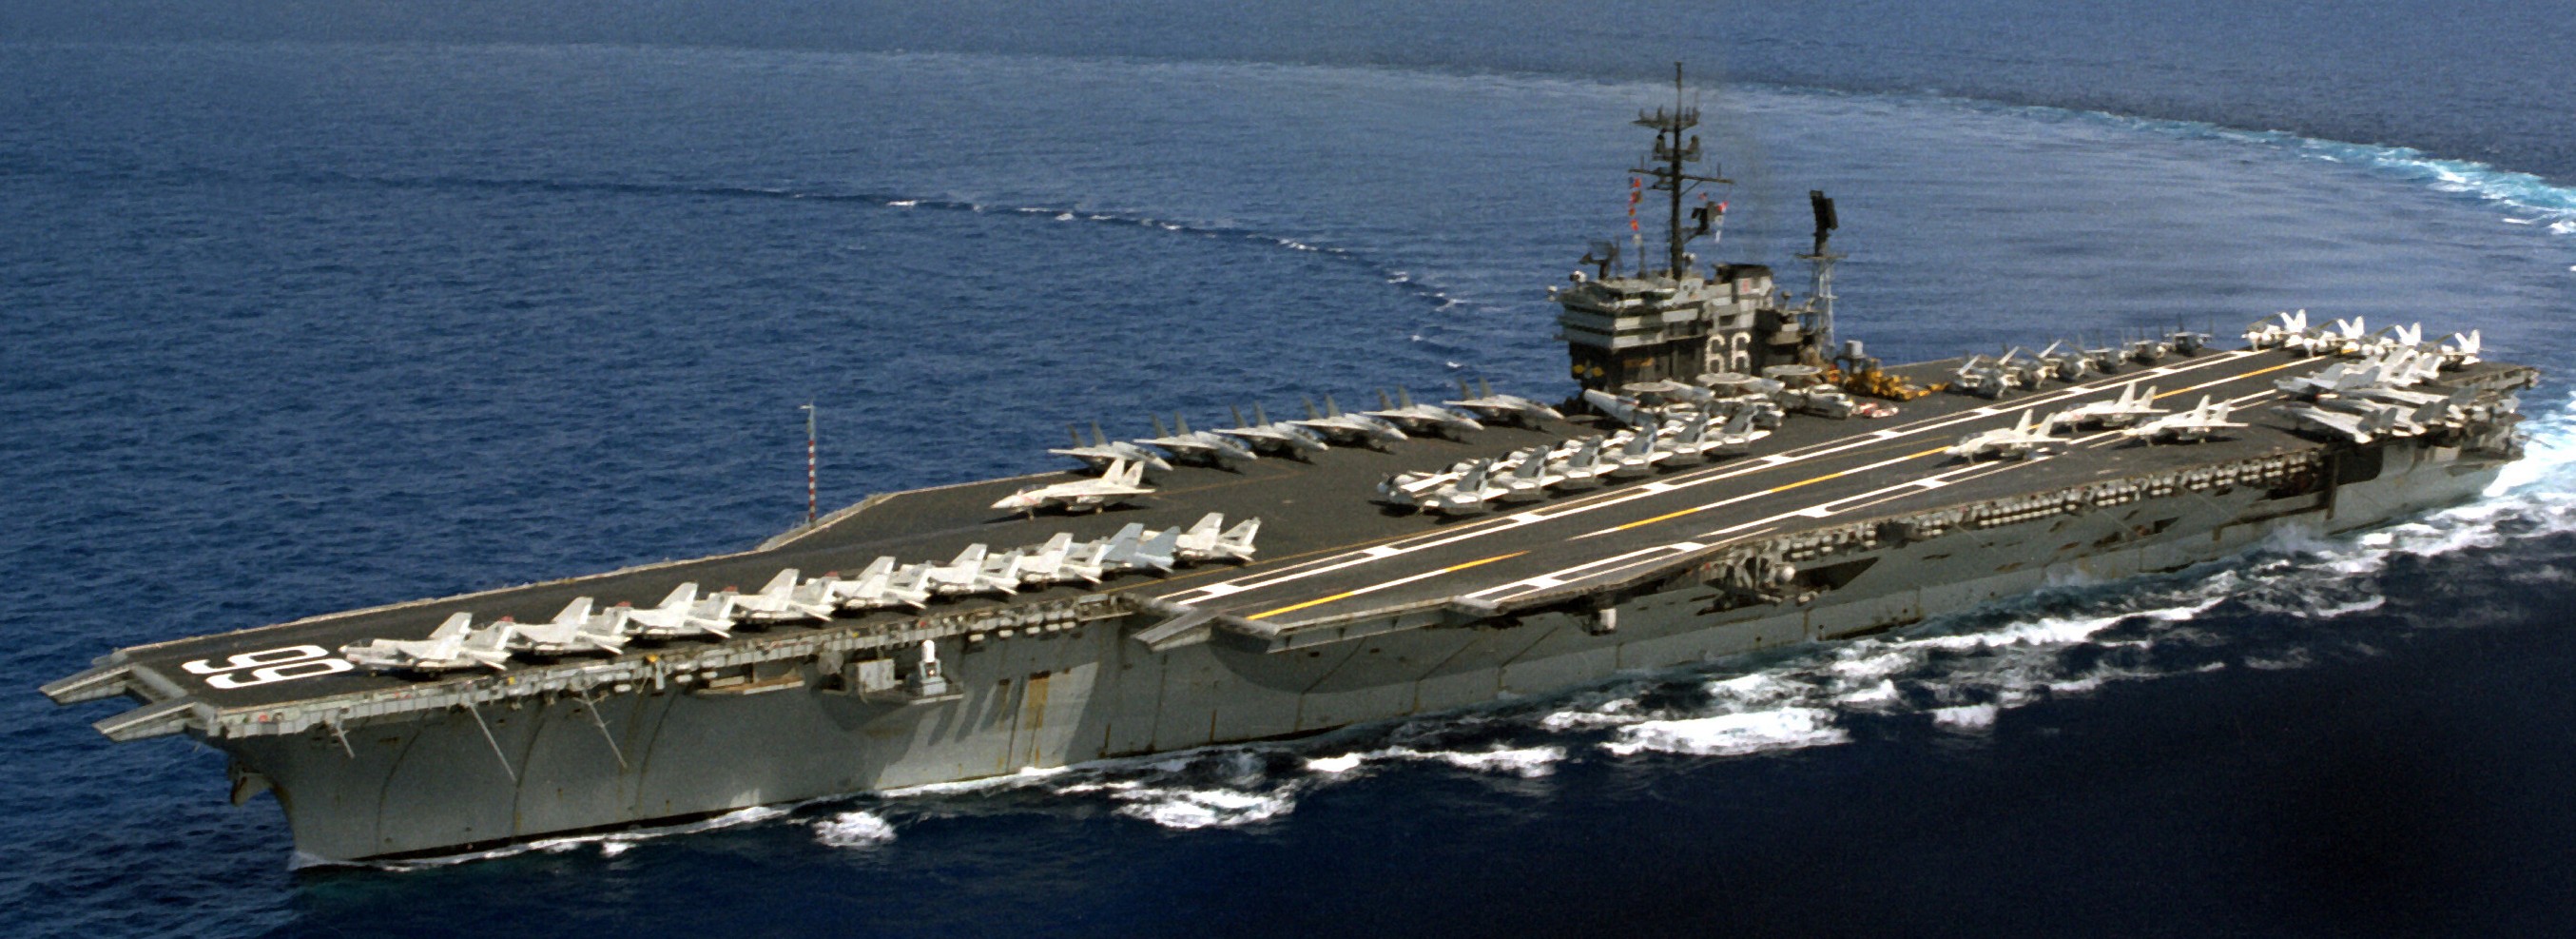 cv-66 uss america kitty hawk class aircraft carrier air wing cvw-1 us navy 58